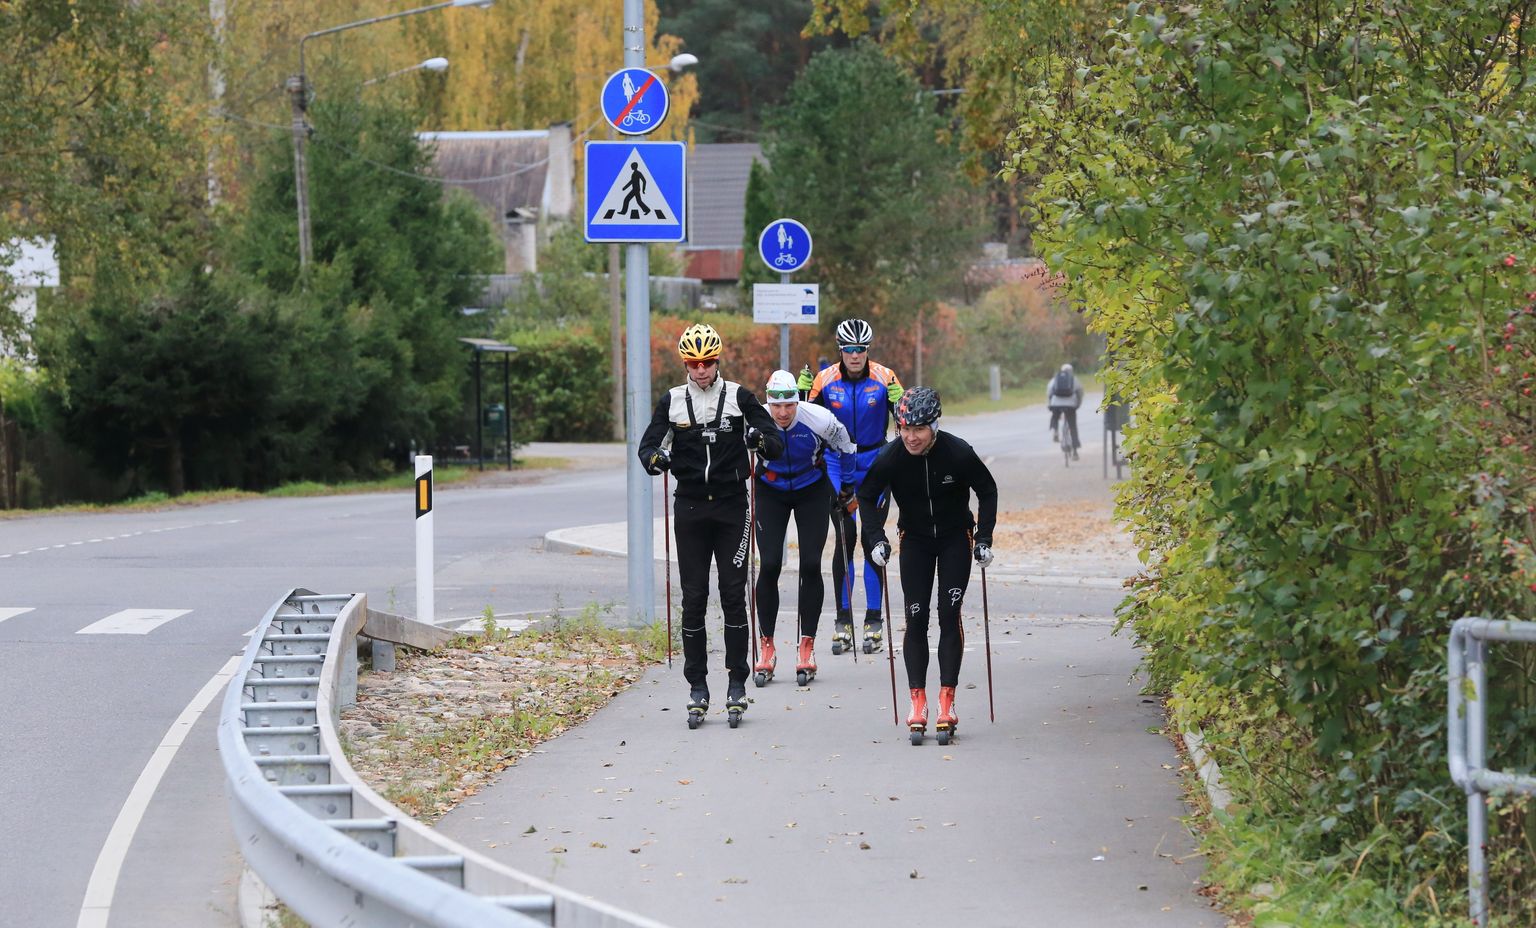 Pühapäeval võib Tartu erinevatel kergliiklusteedel näha rullsuusatajaid ja rattureid, kes sõidavad üheskoos ümber Tartu linna.